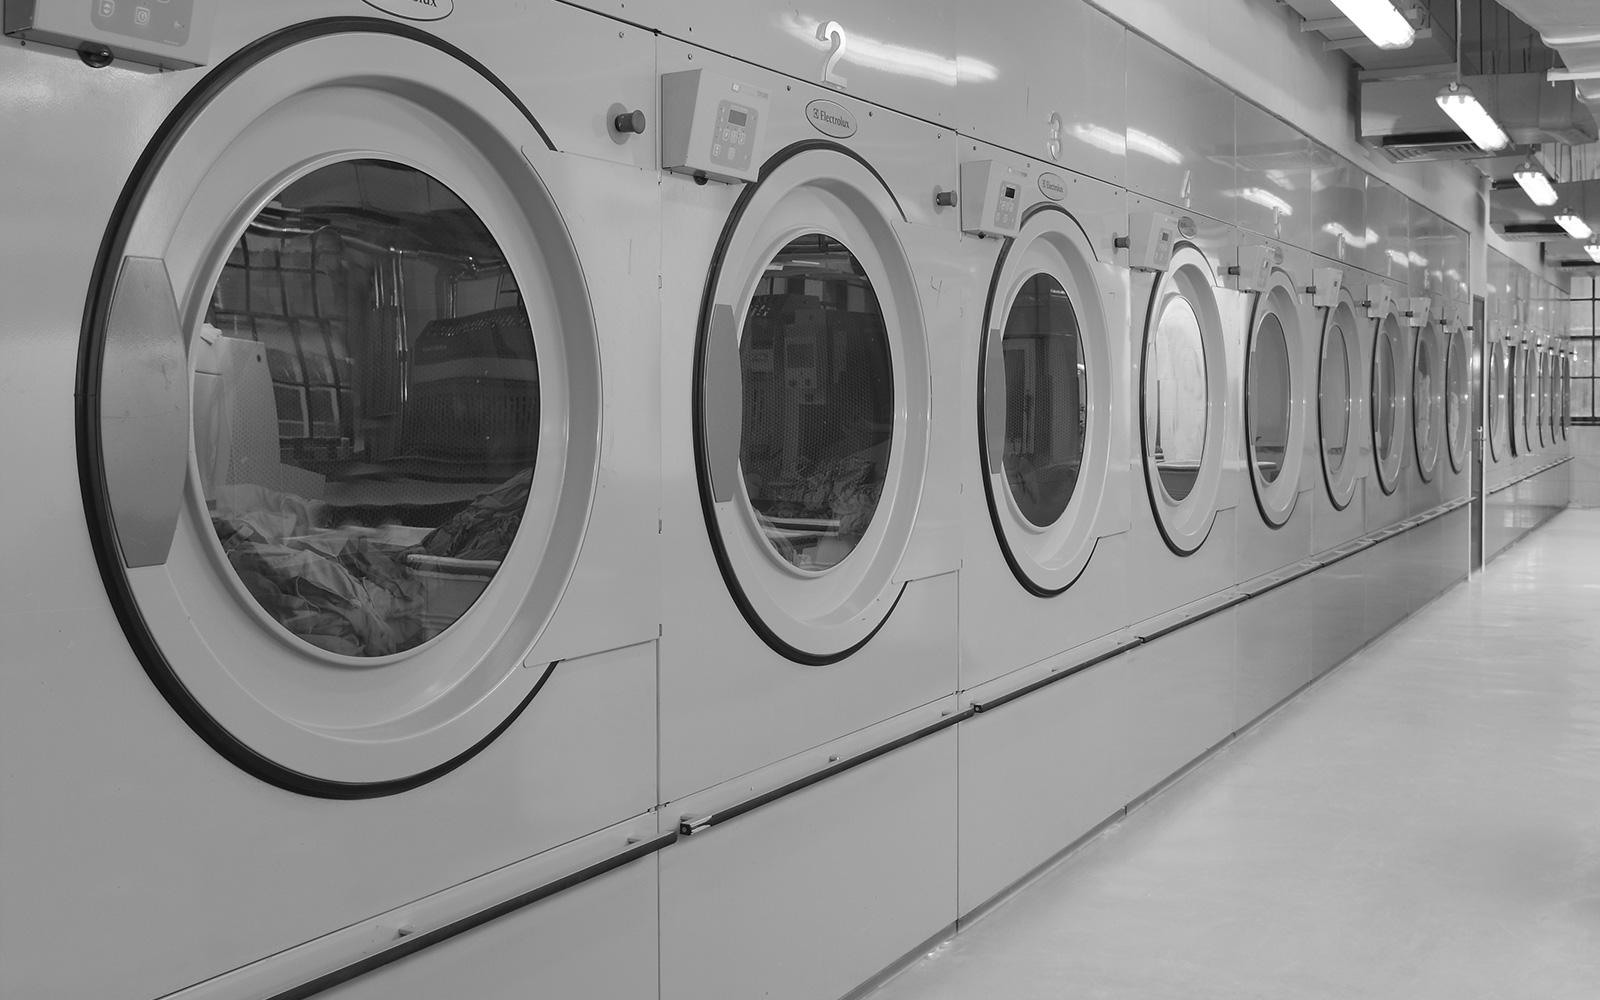 Groupe SEBI : Vente, installation et maintenance de blanchisseries industrielles pour les ehpad, hôtels, cliniques